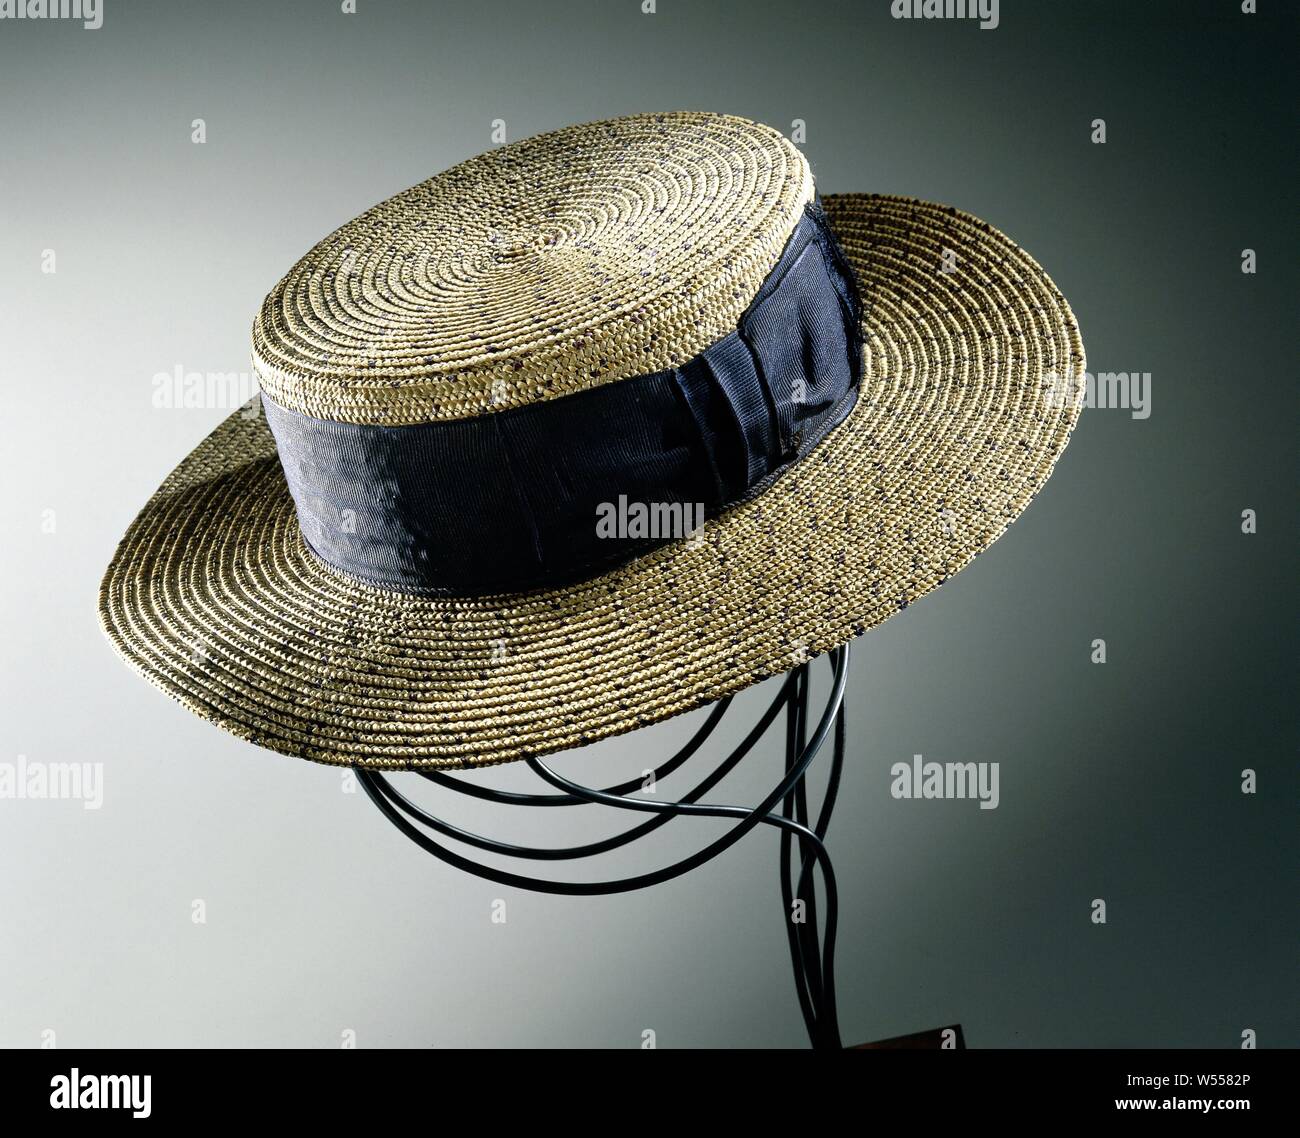 Canotier Hat Banque d'image et photos - Alamy